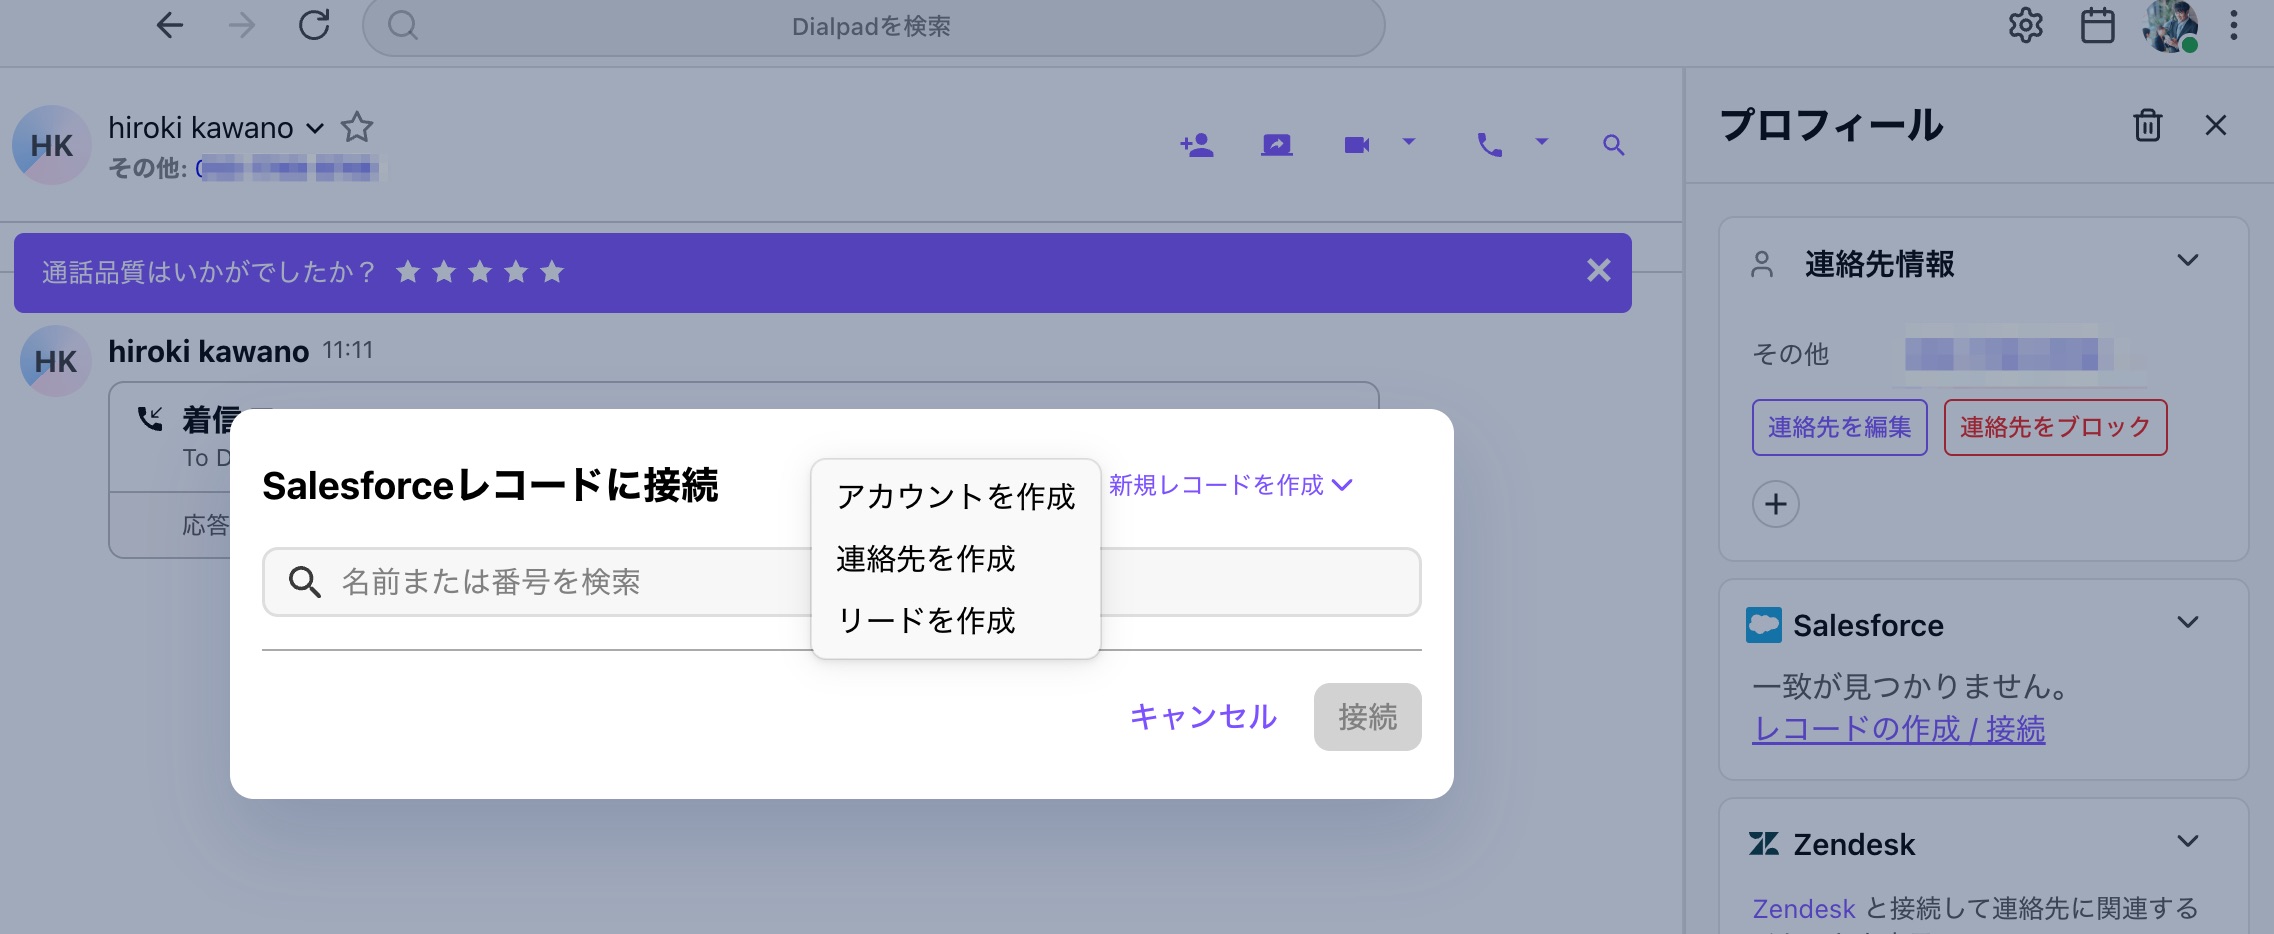 app_no_contact.jpg